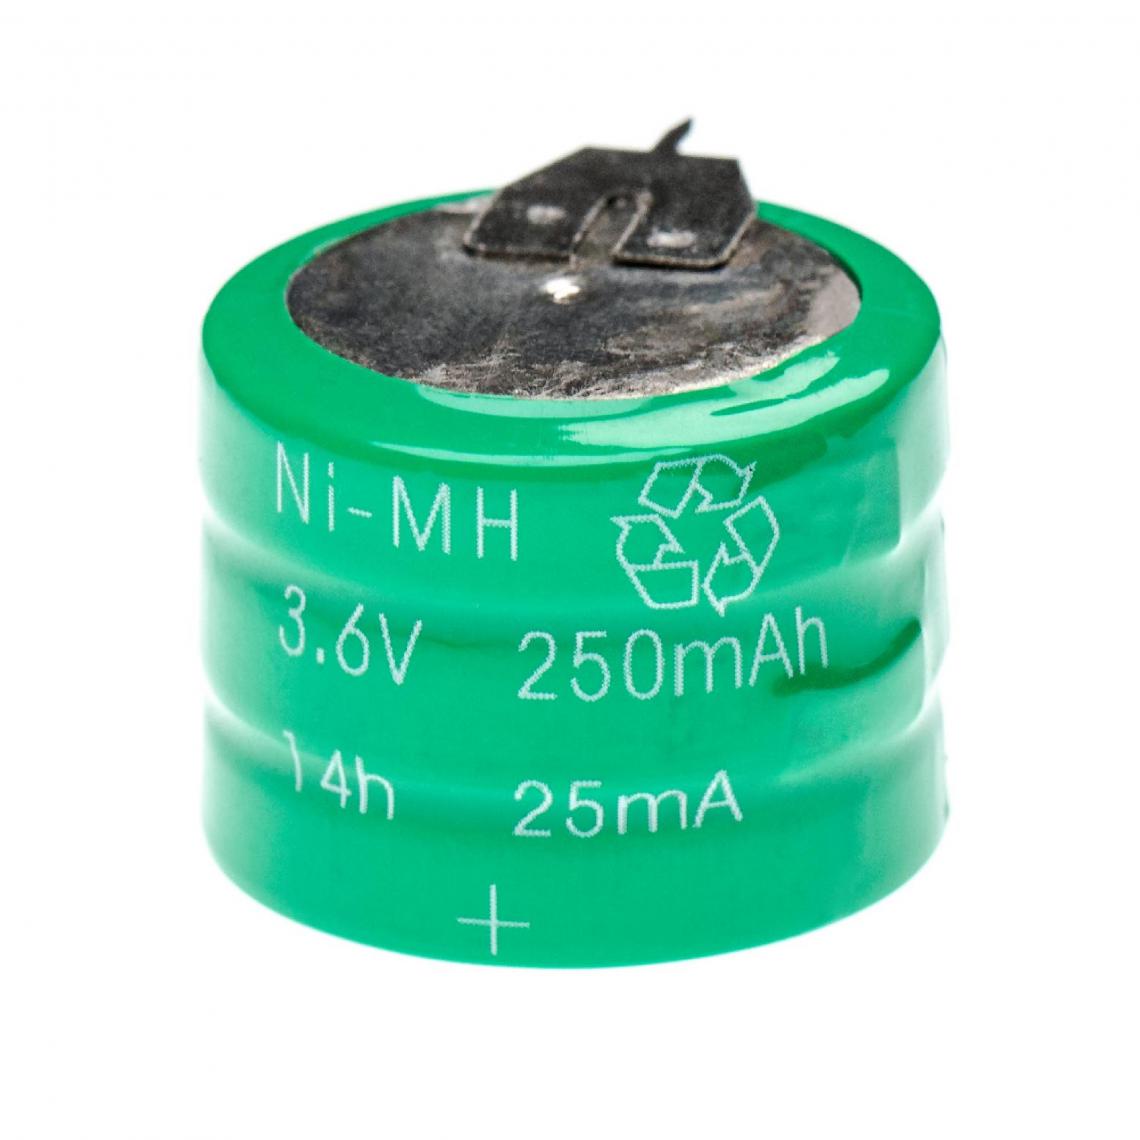 Vhbw - vhbw Batterie remplacement pour V250H pour modèlisme RC (250mAh, 3,6V, NiMH), avec connexion à 3 broches - Autre appareil de mesure